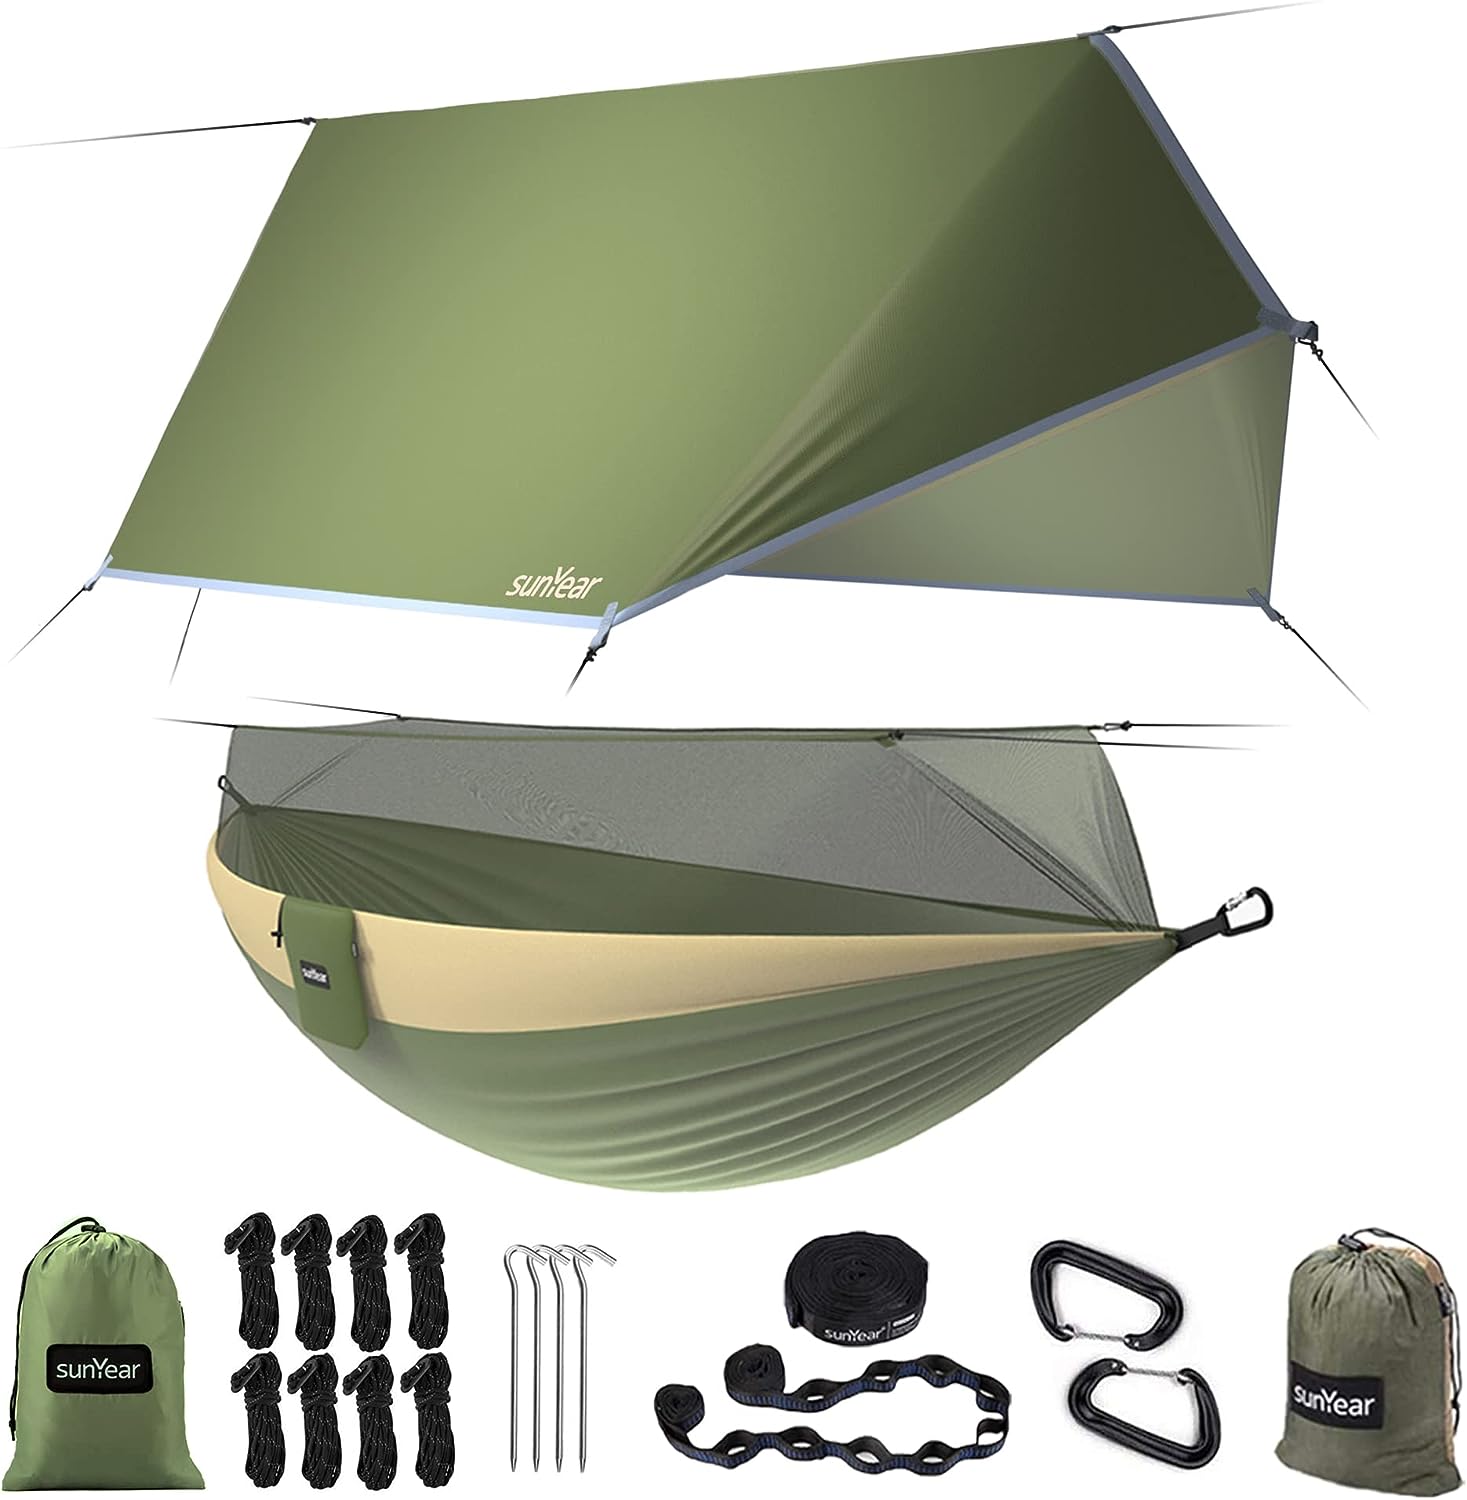 sunyear hammock tent green waterproof